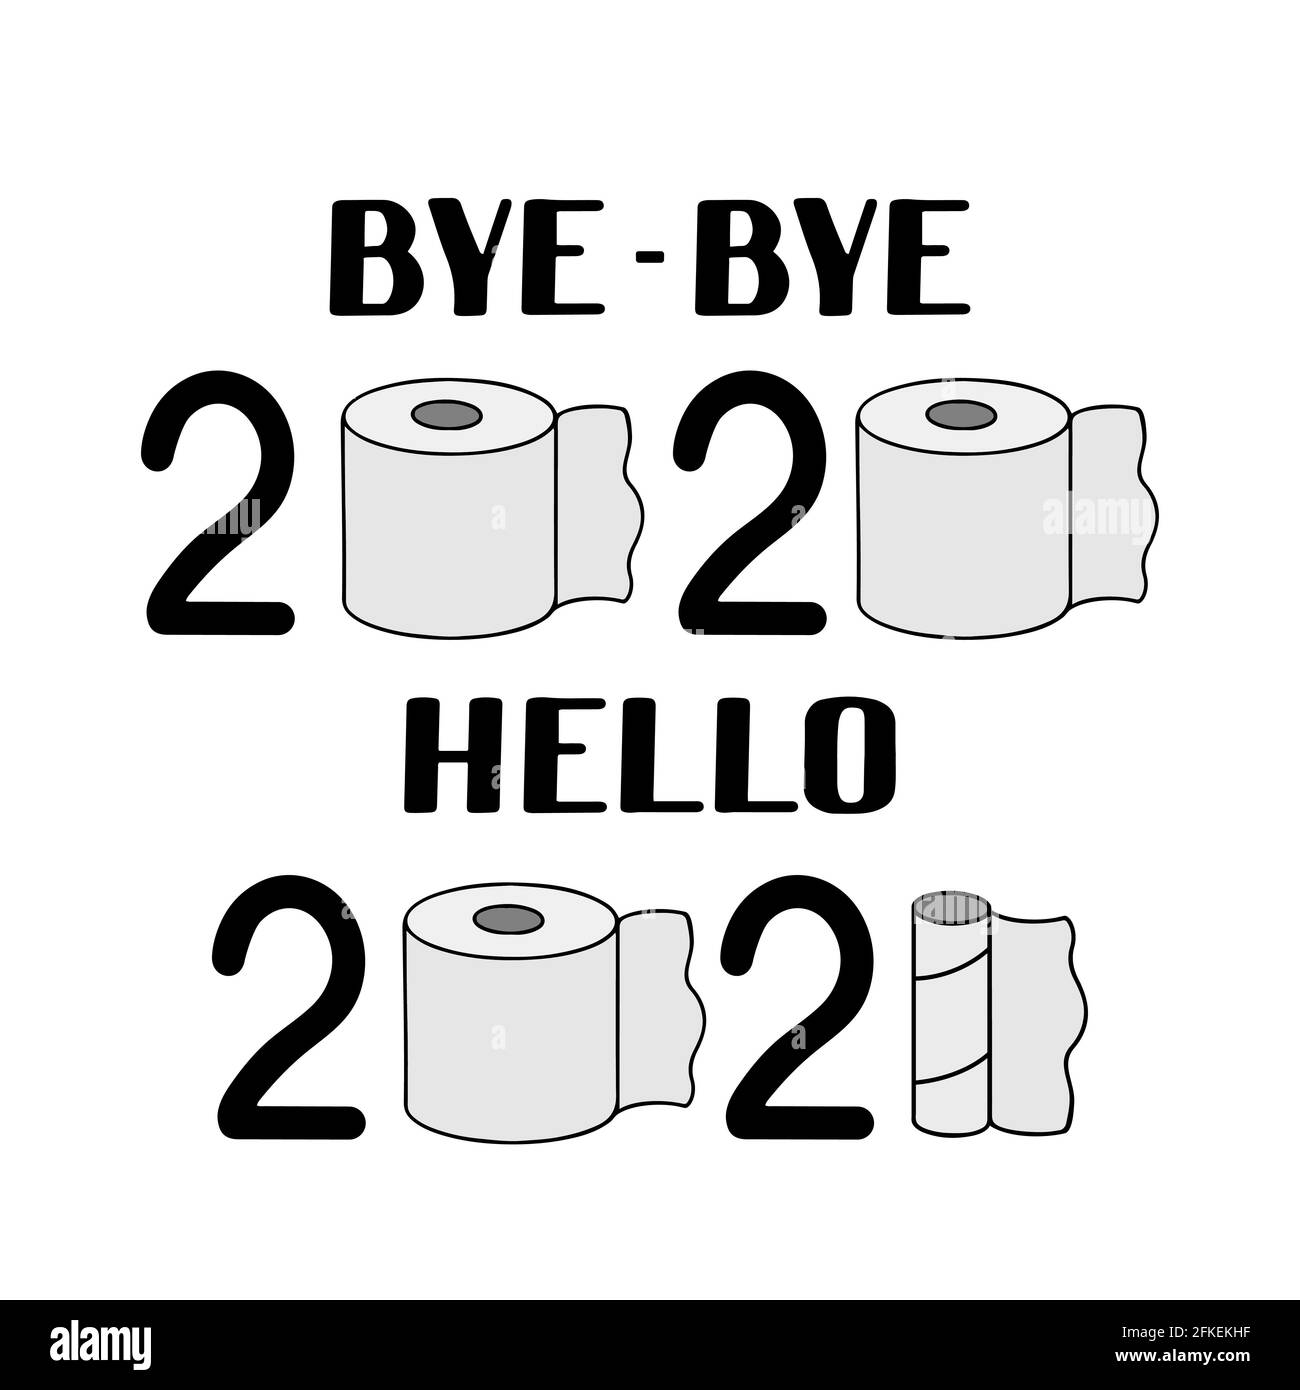 Bye-bye 2020 hello 2021 lettering avec rouleau de papier toilette usagé.  Pandémie de coronavirus covid-19. Affiche typographique drôle du nouvel an.  Modèle vectoriel pour ba Image Vectorielle Stock - Alamy